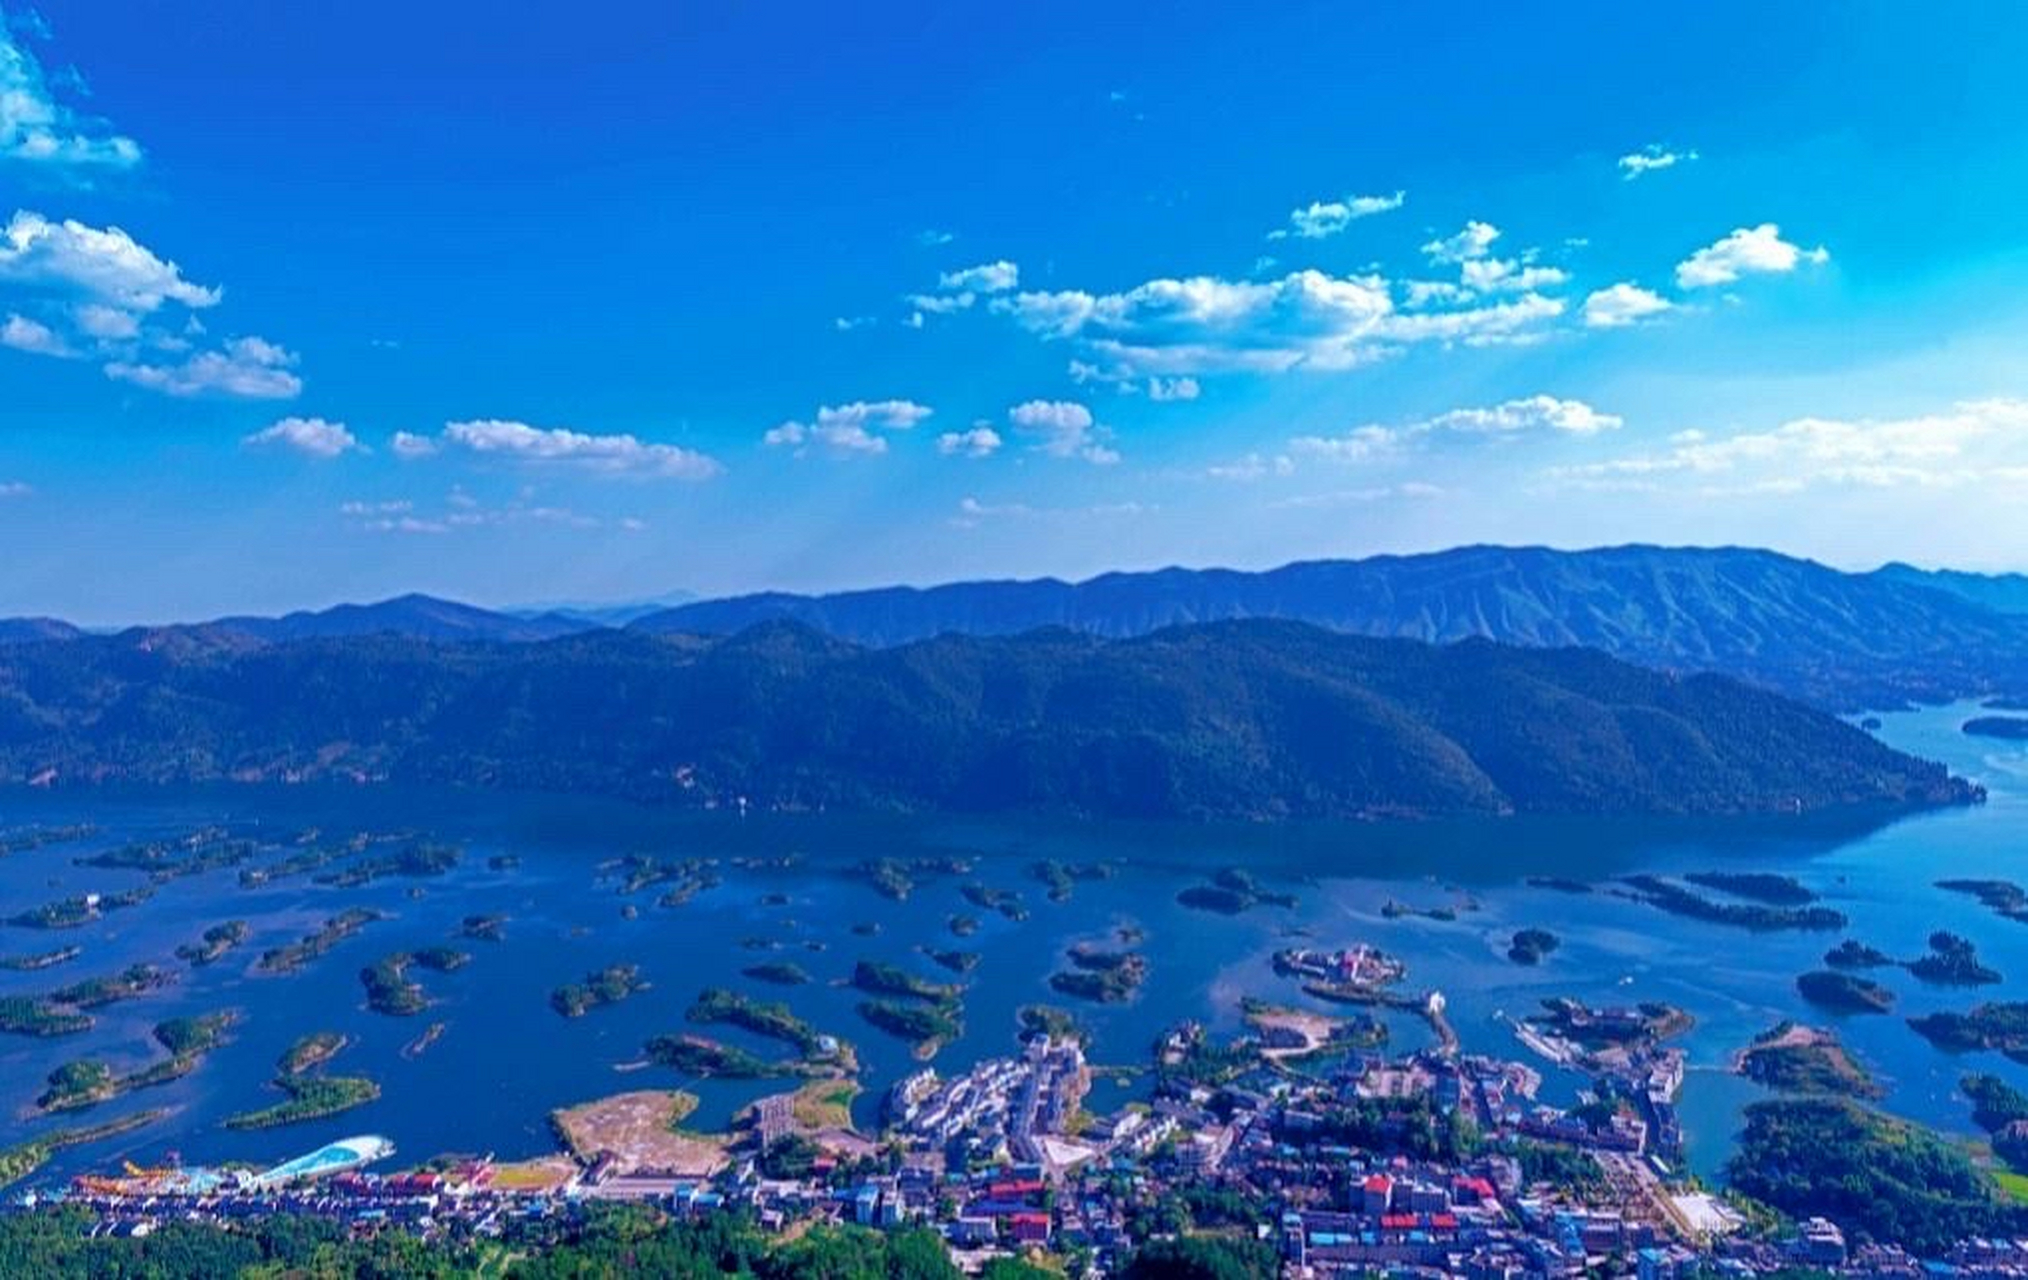 黄石仙岛湖风景区攻略图片